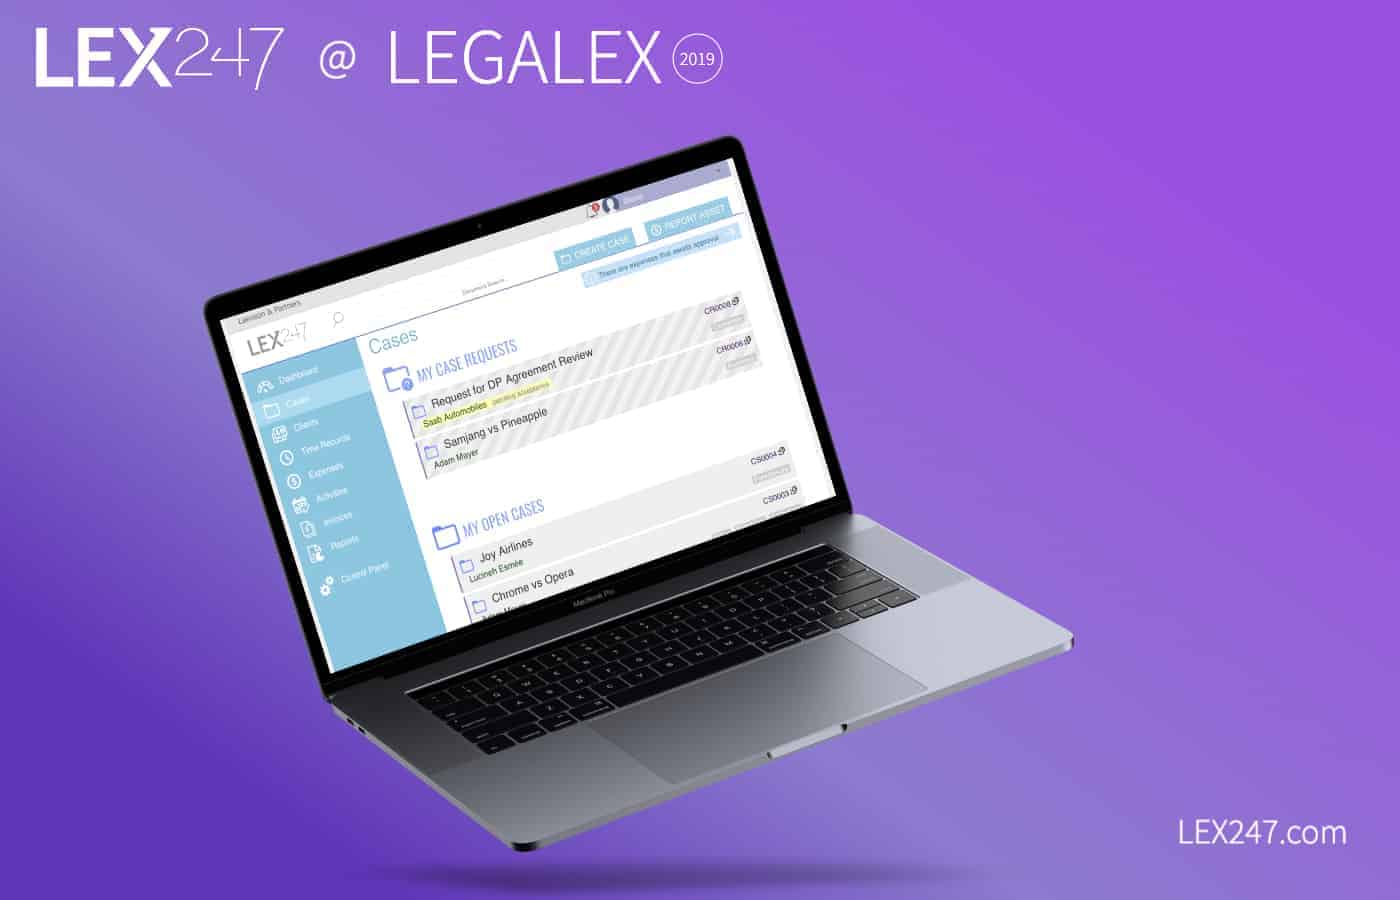 LEX247 at legalex 2019